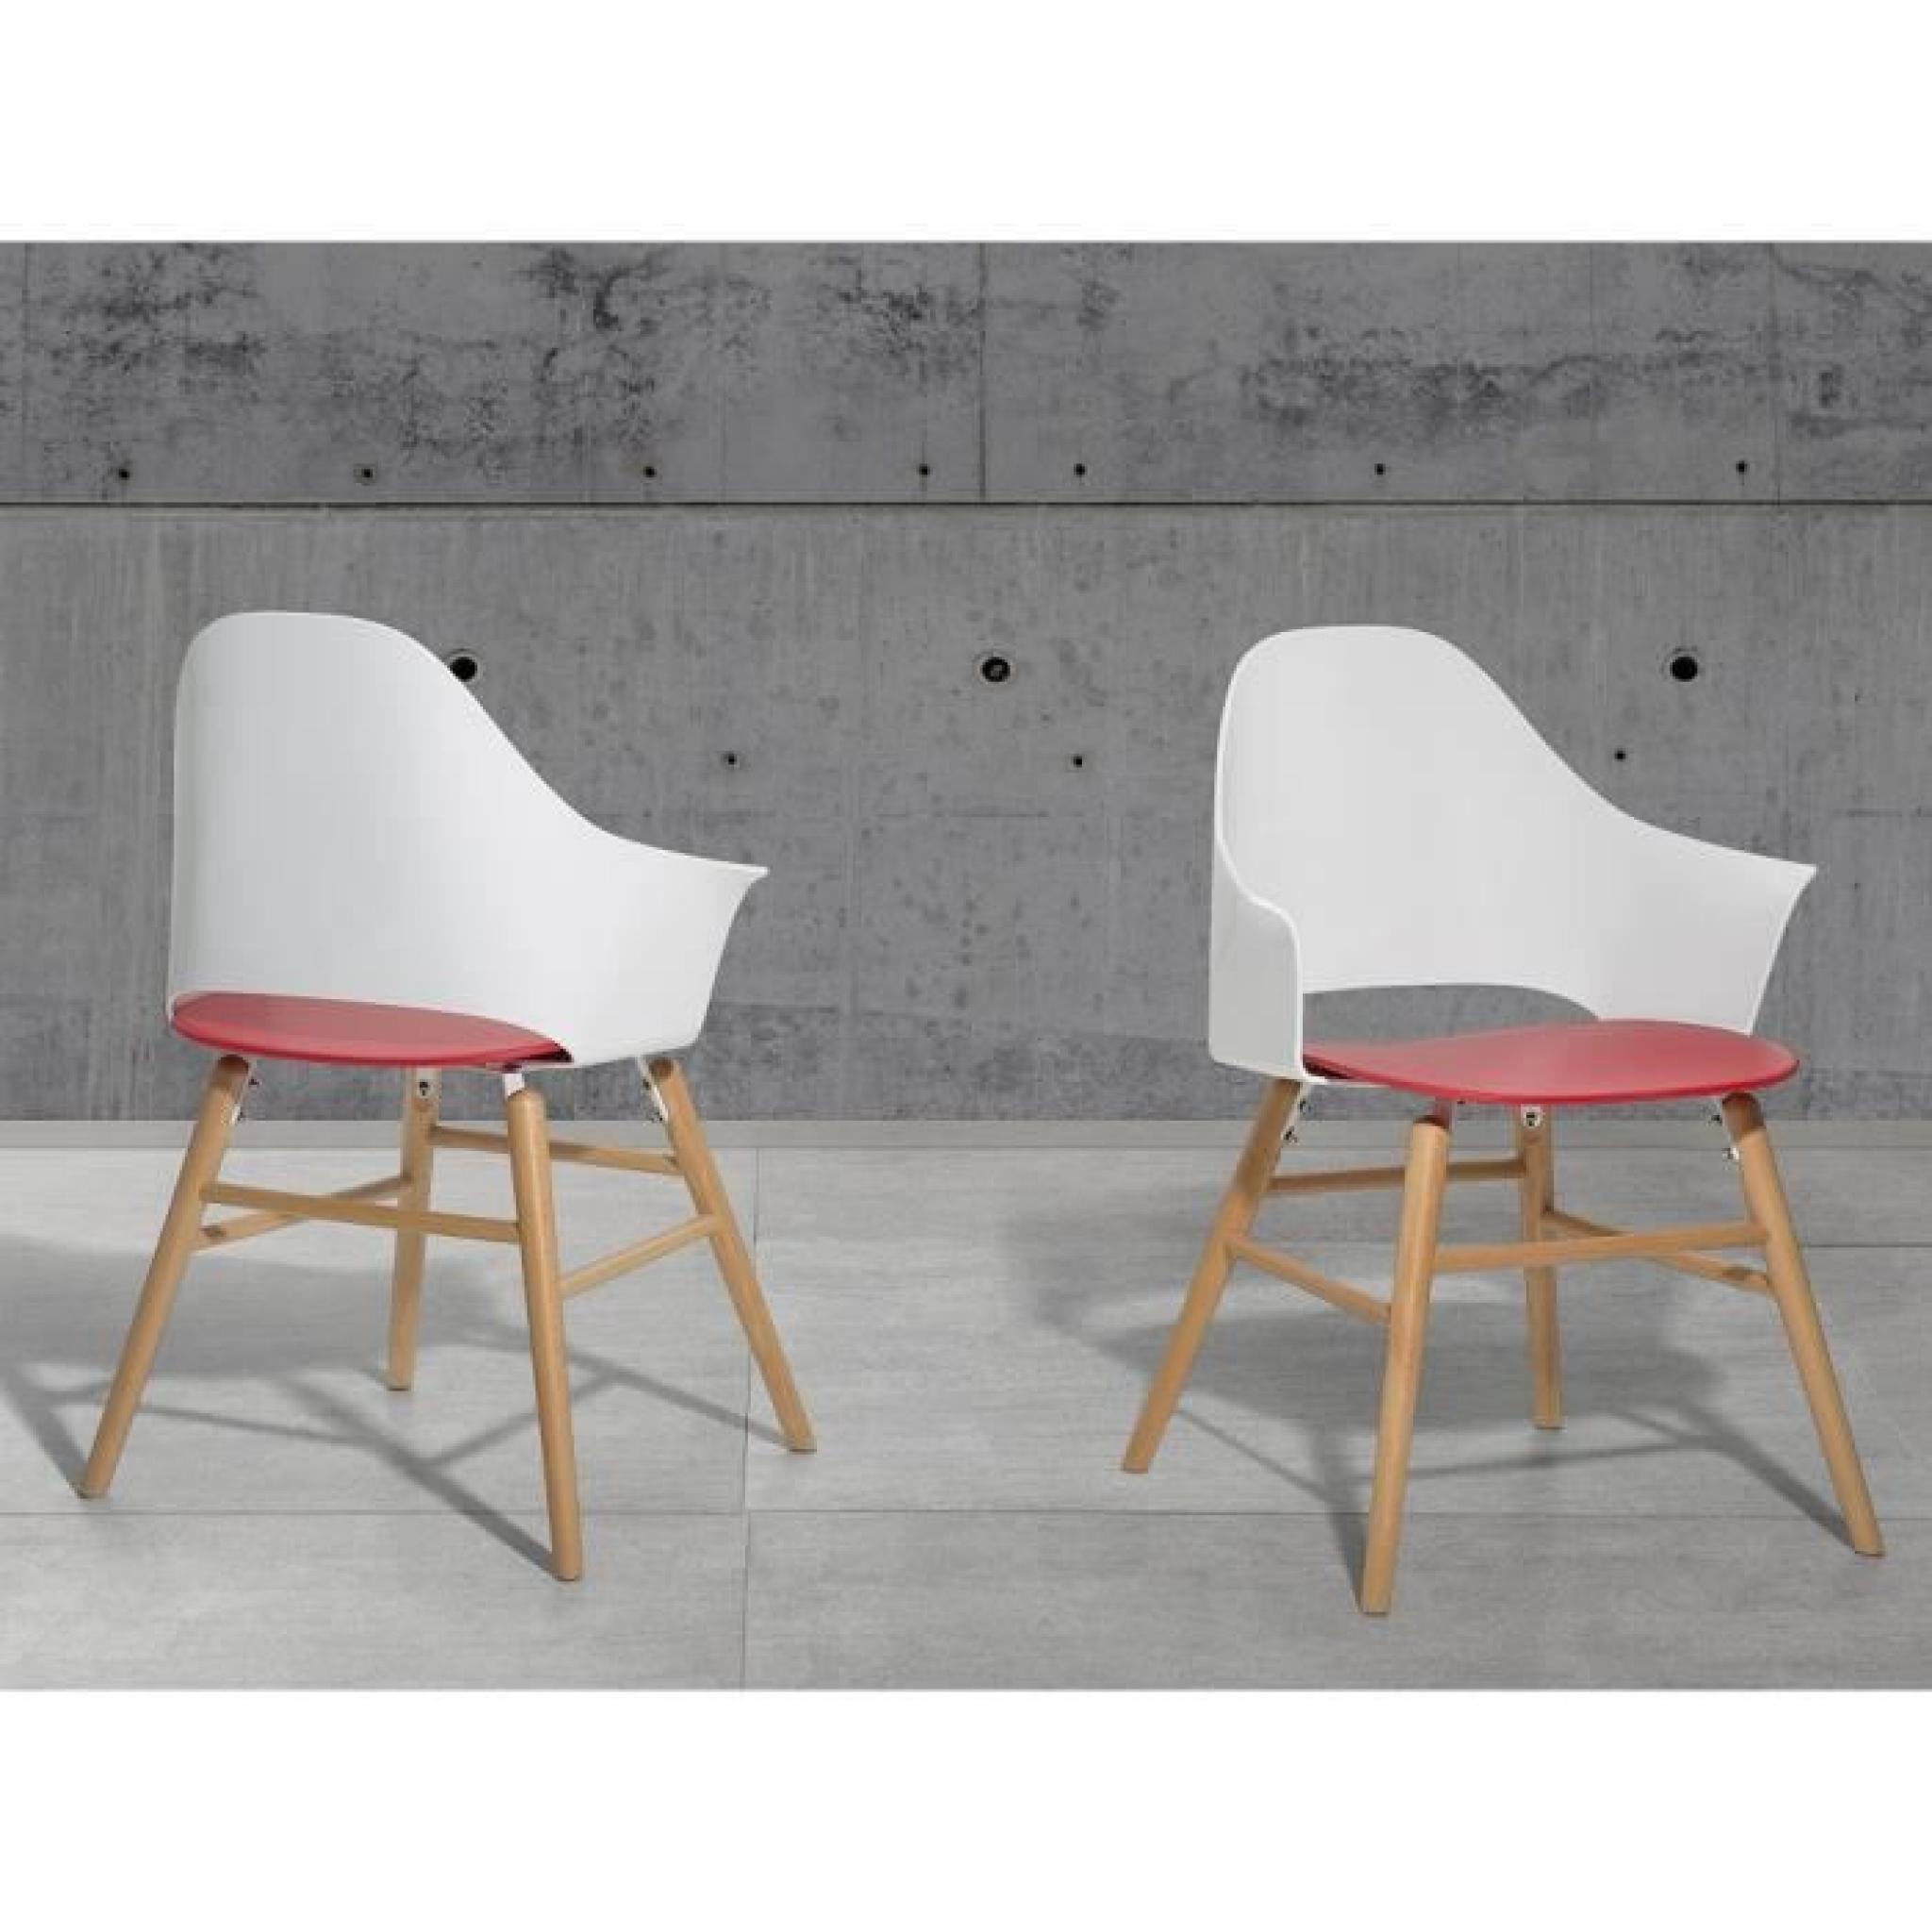 Chaise design - siège en plastique blanc / rouge - Boston